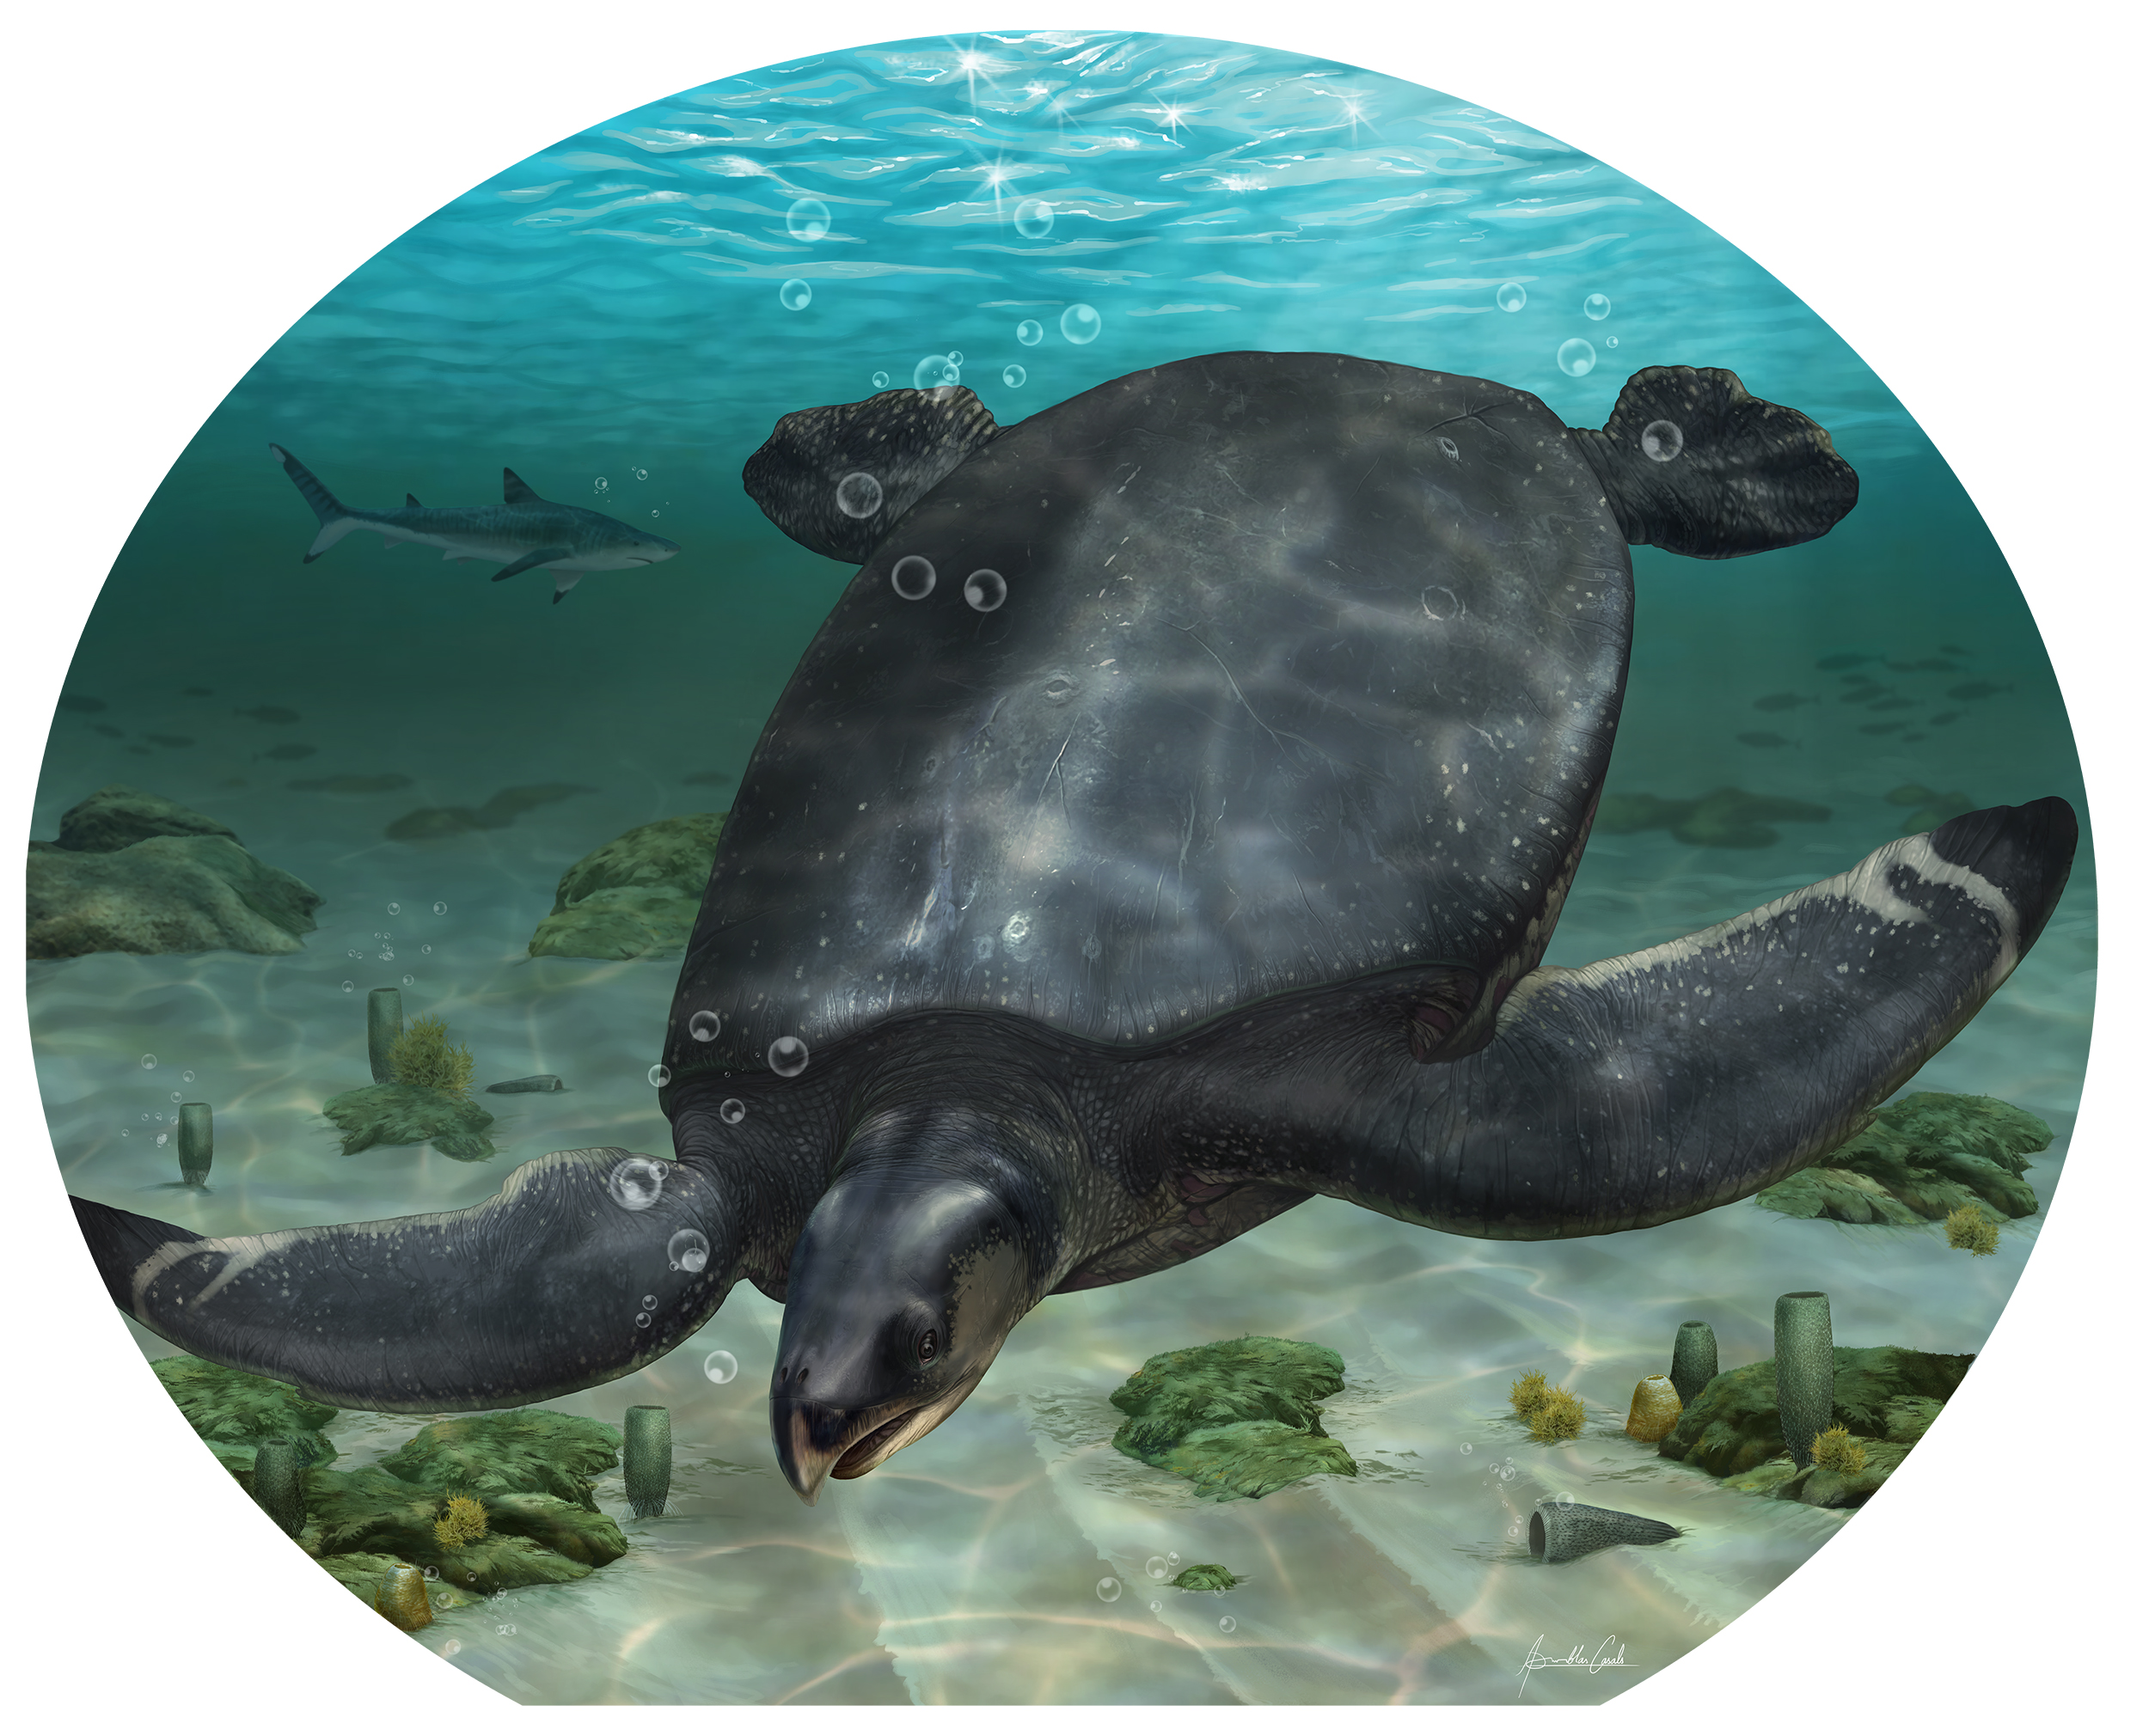 Ισπανία: Ανακαλύφθηκε απολίθωμα γιγάντιας αρχαίας θαλάσσιας χελώνας μήκους σχεδόν τεσσάρων μέτρων